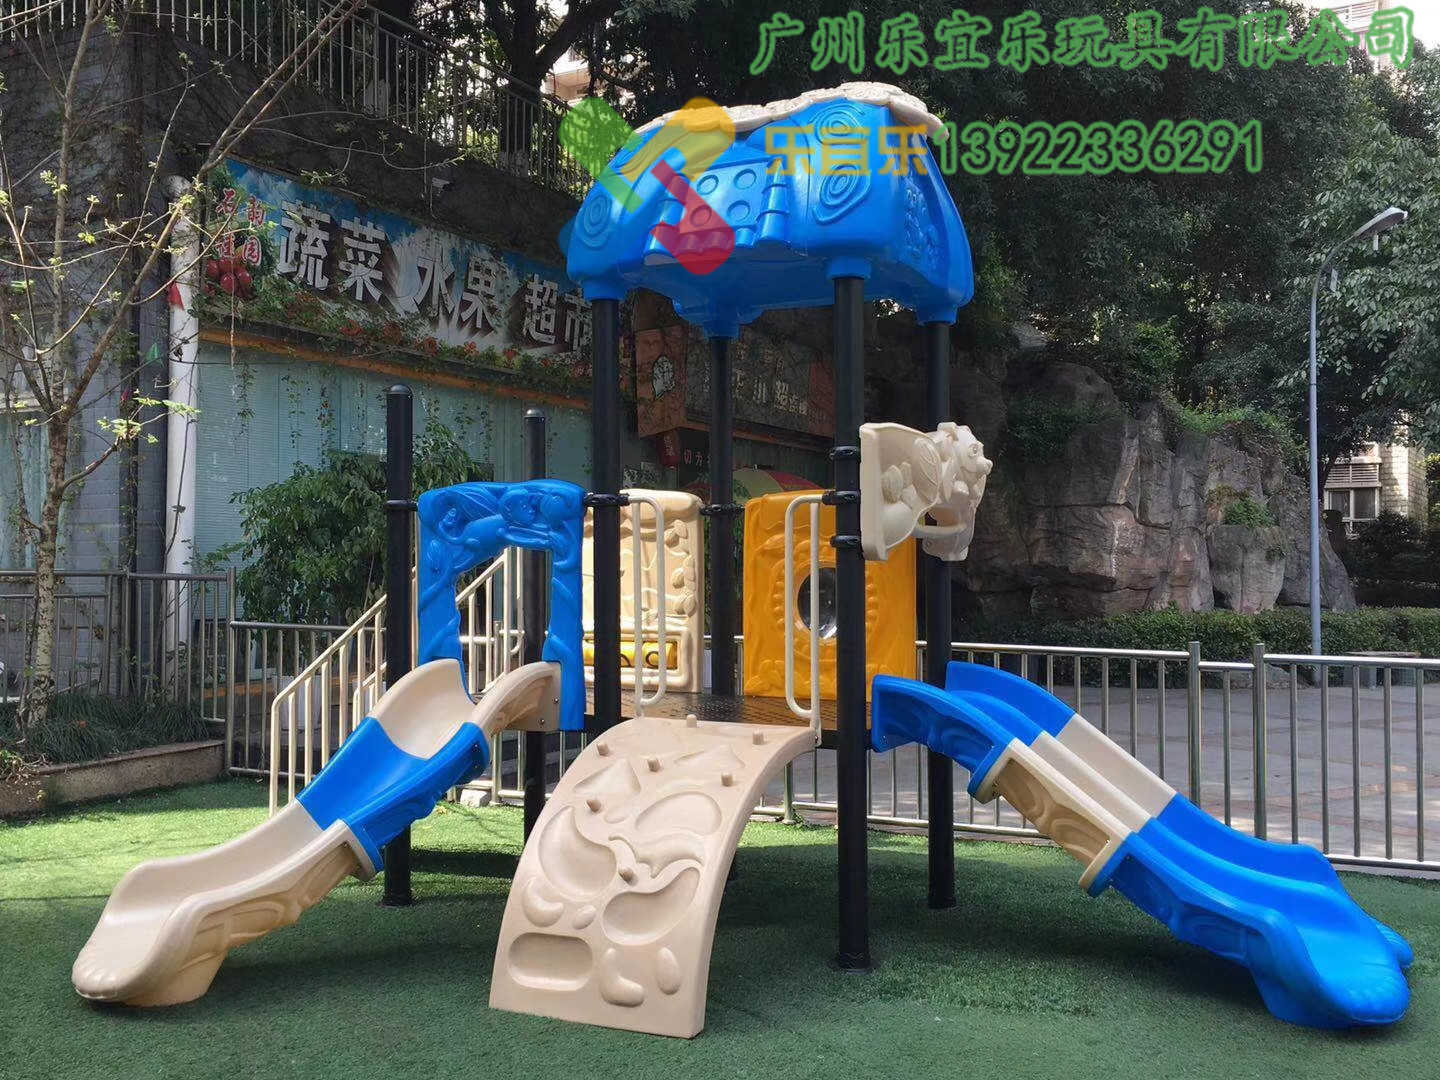 小区儿童户外游乐设施塑料组合滑梯幼儿园室外组合滑滑梯